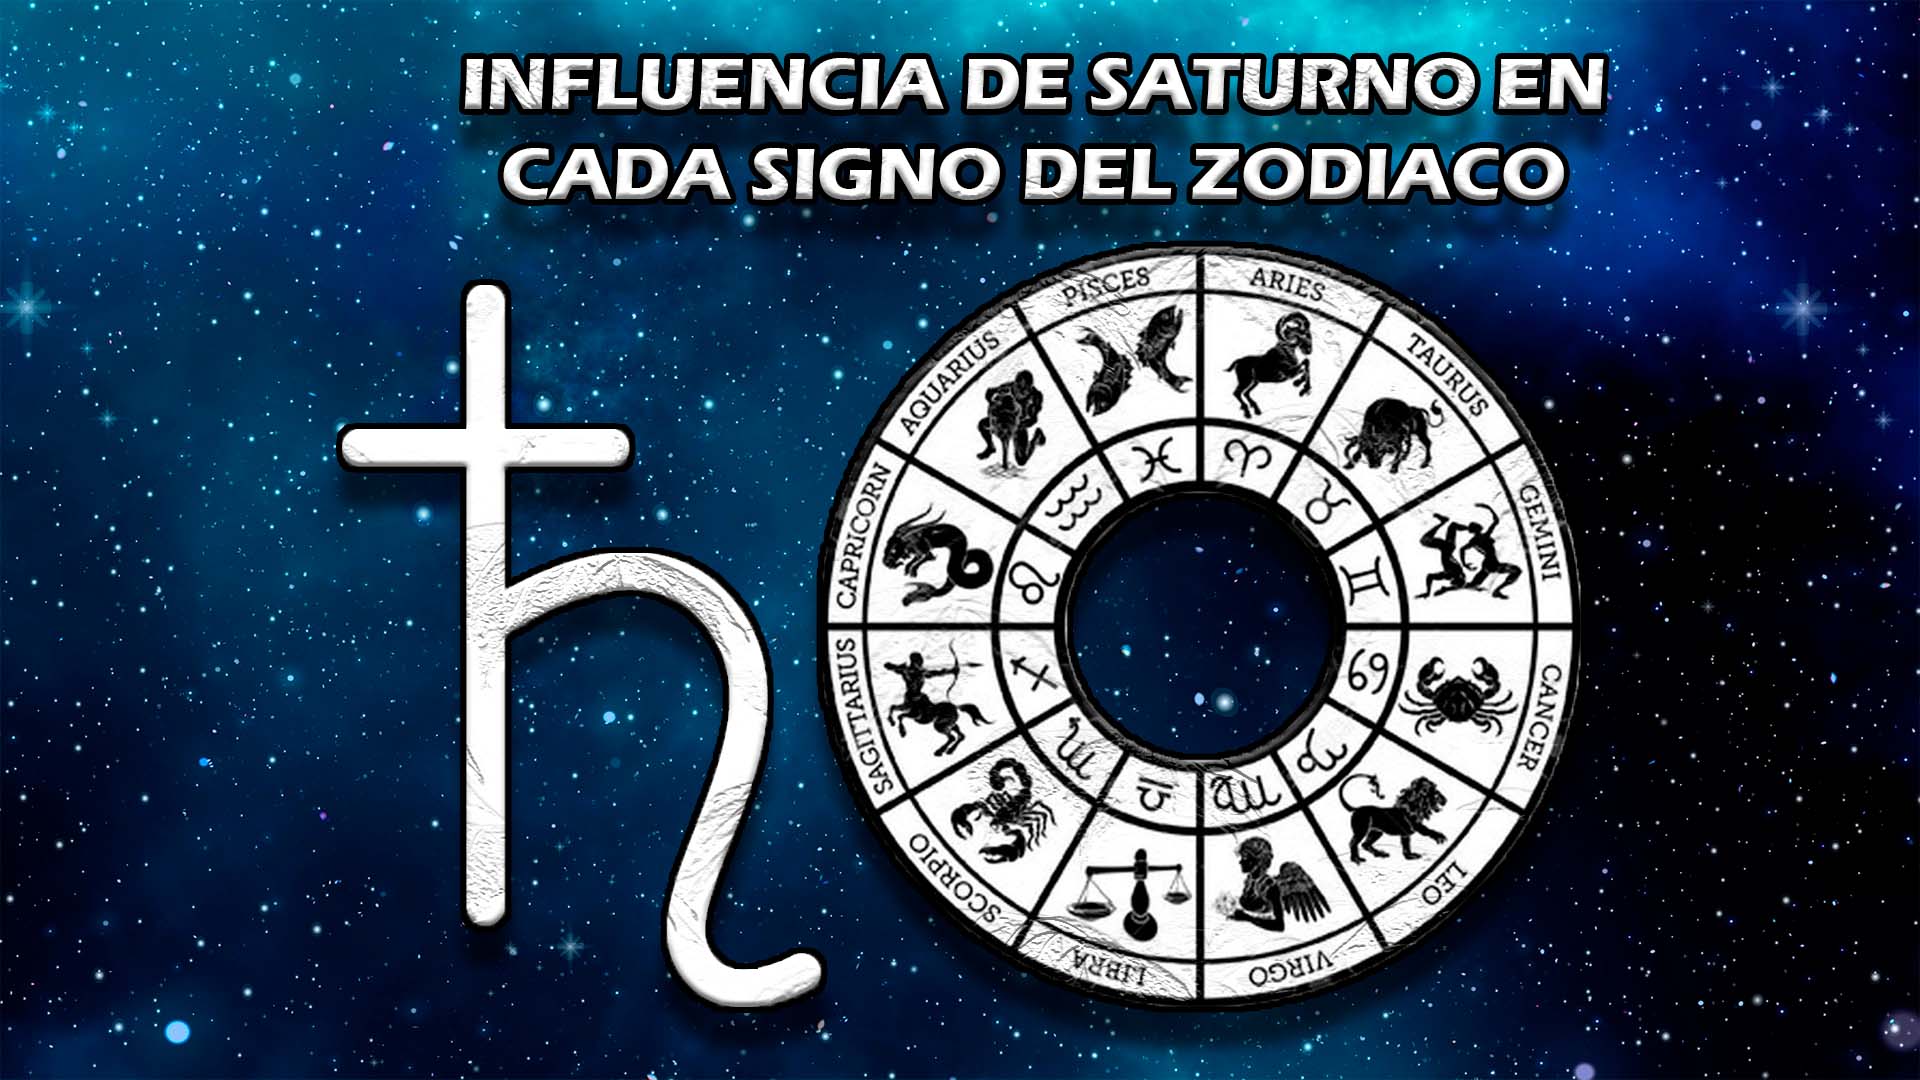 Influencia de Saturno en cada signo del zodiaco